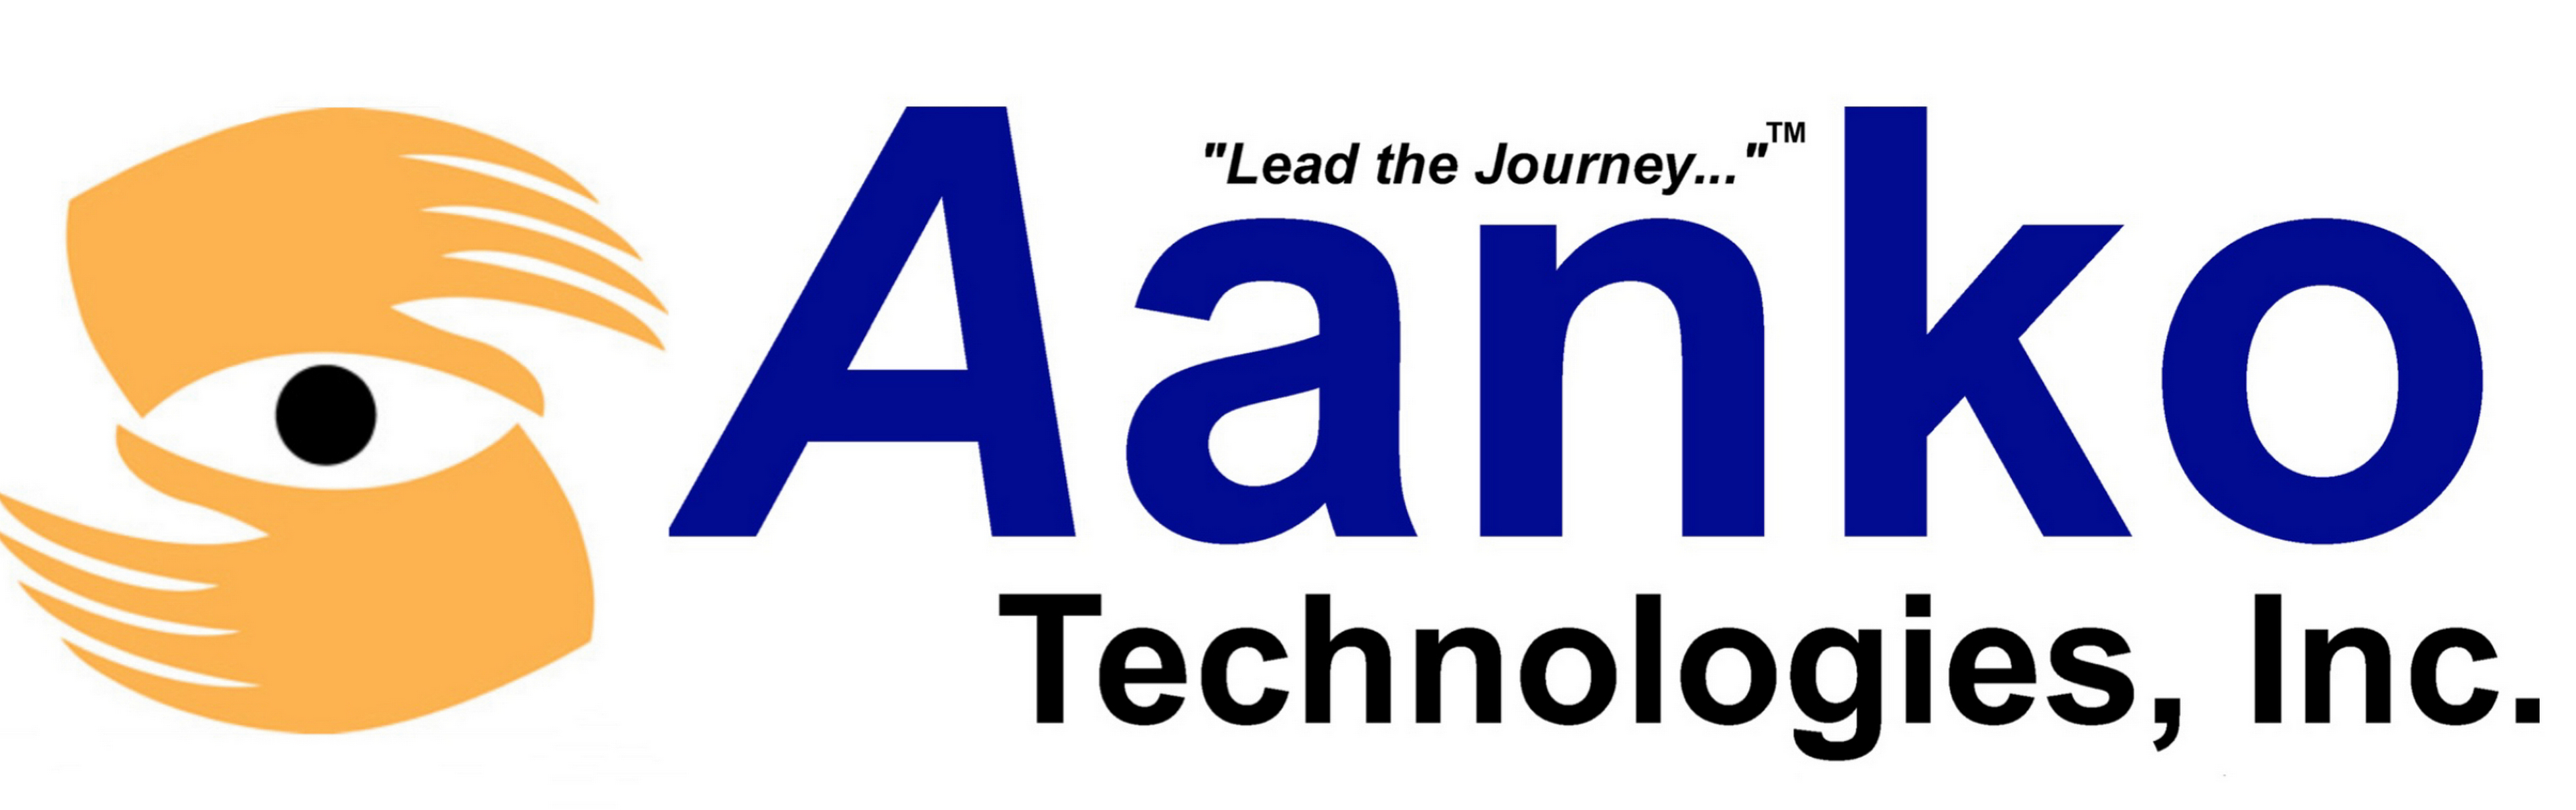 Image for Vendor - Aanko Technologies 22-05